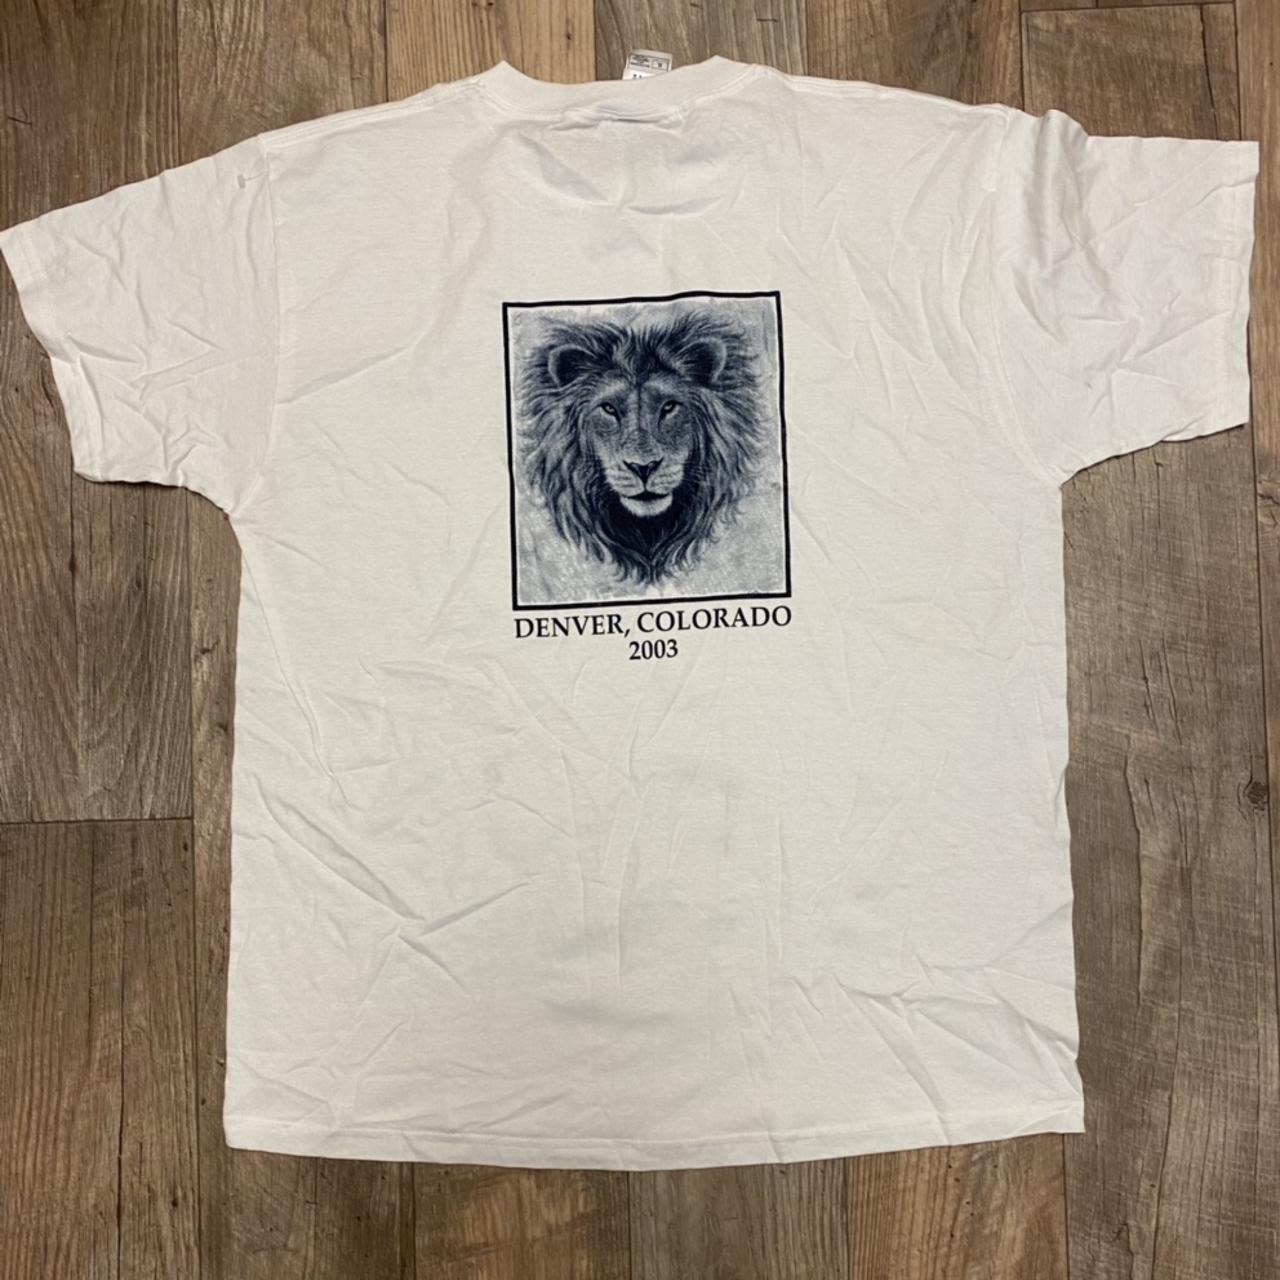 Vintage Y2K 2003 Lions Club Denver Colorado T-Shirt!... - Depop